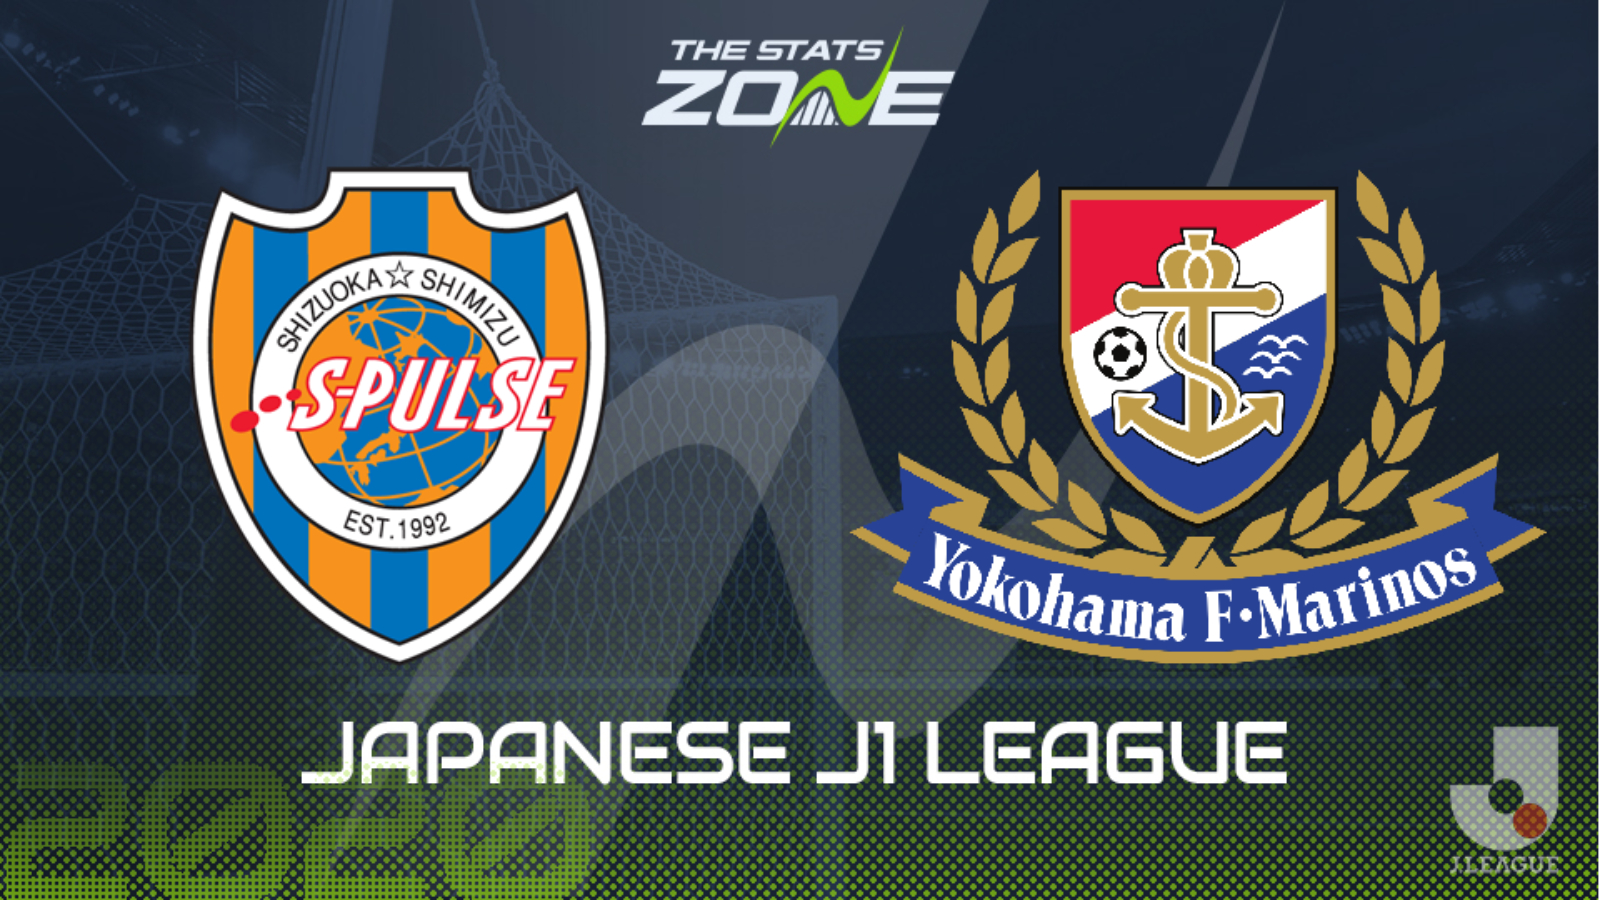 2020 Japanese J1 League Shimizu S Pulse Vs Yokohama F Marinos Preview Prediction The Stats Zone